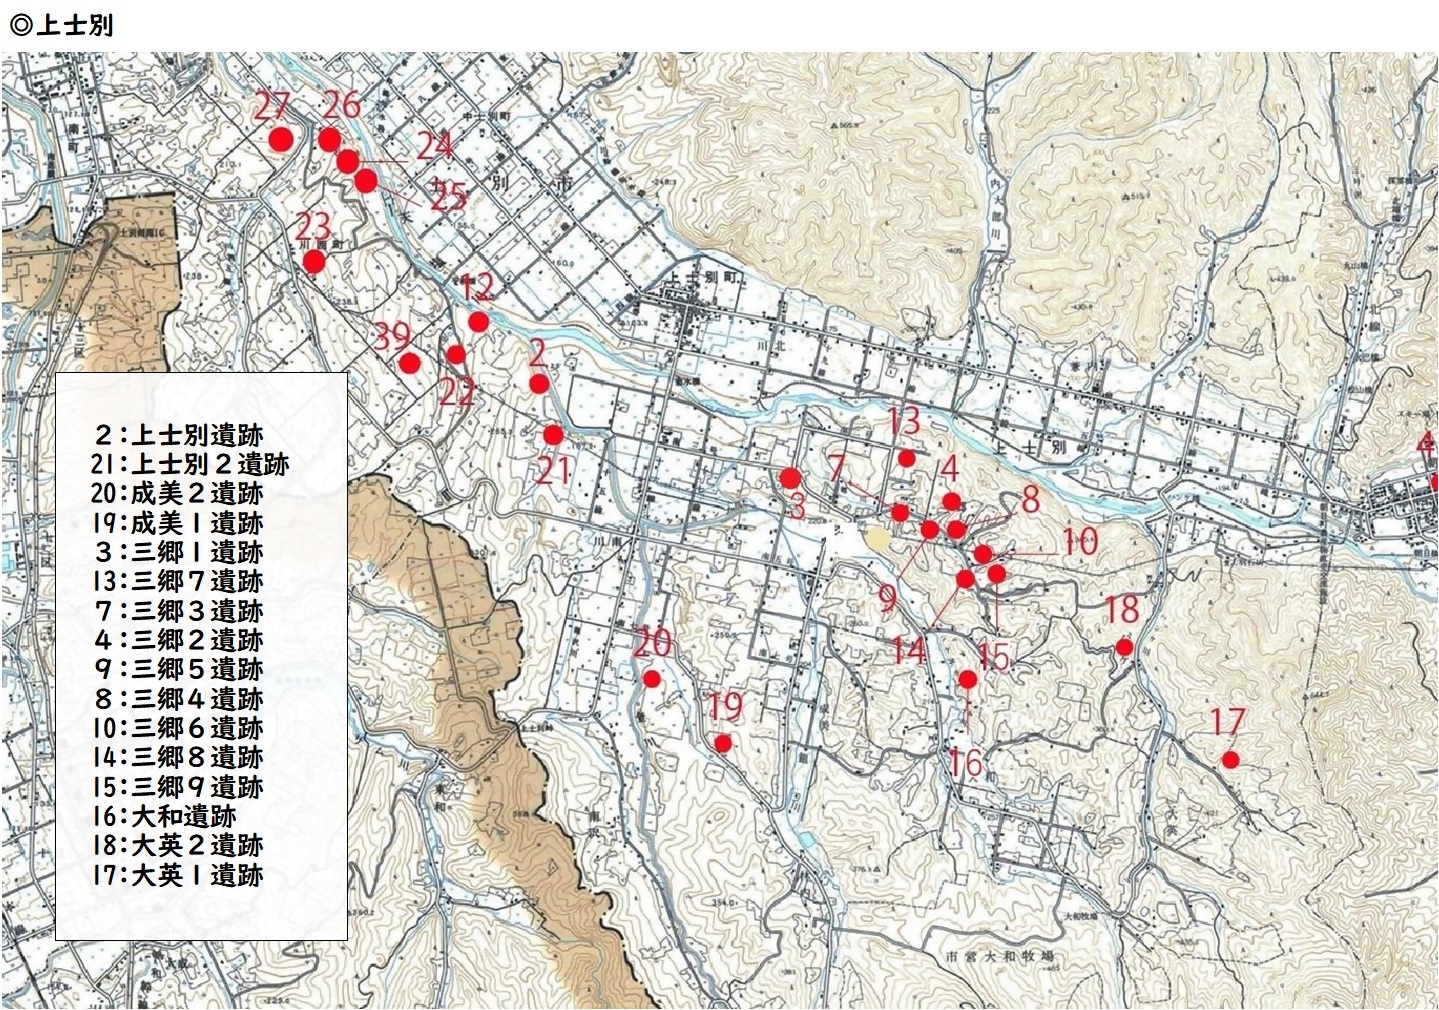 上士別地区の埋蔵文化財包蔵地分布図